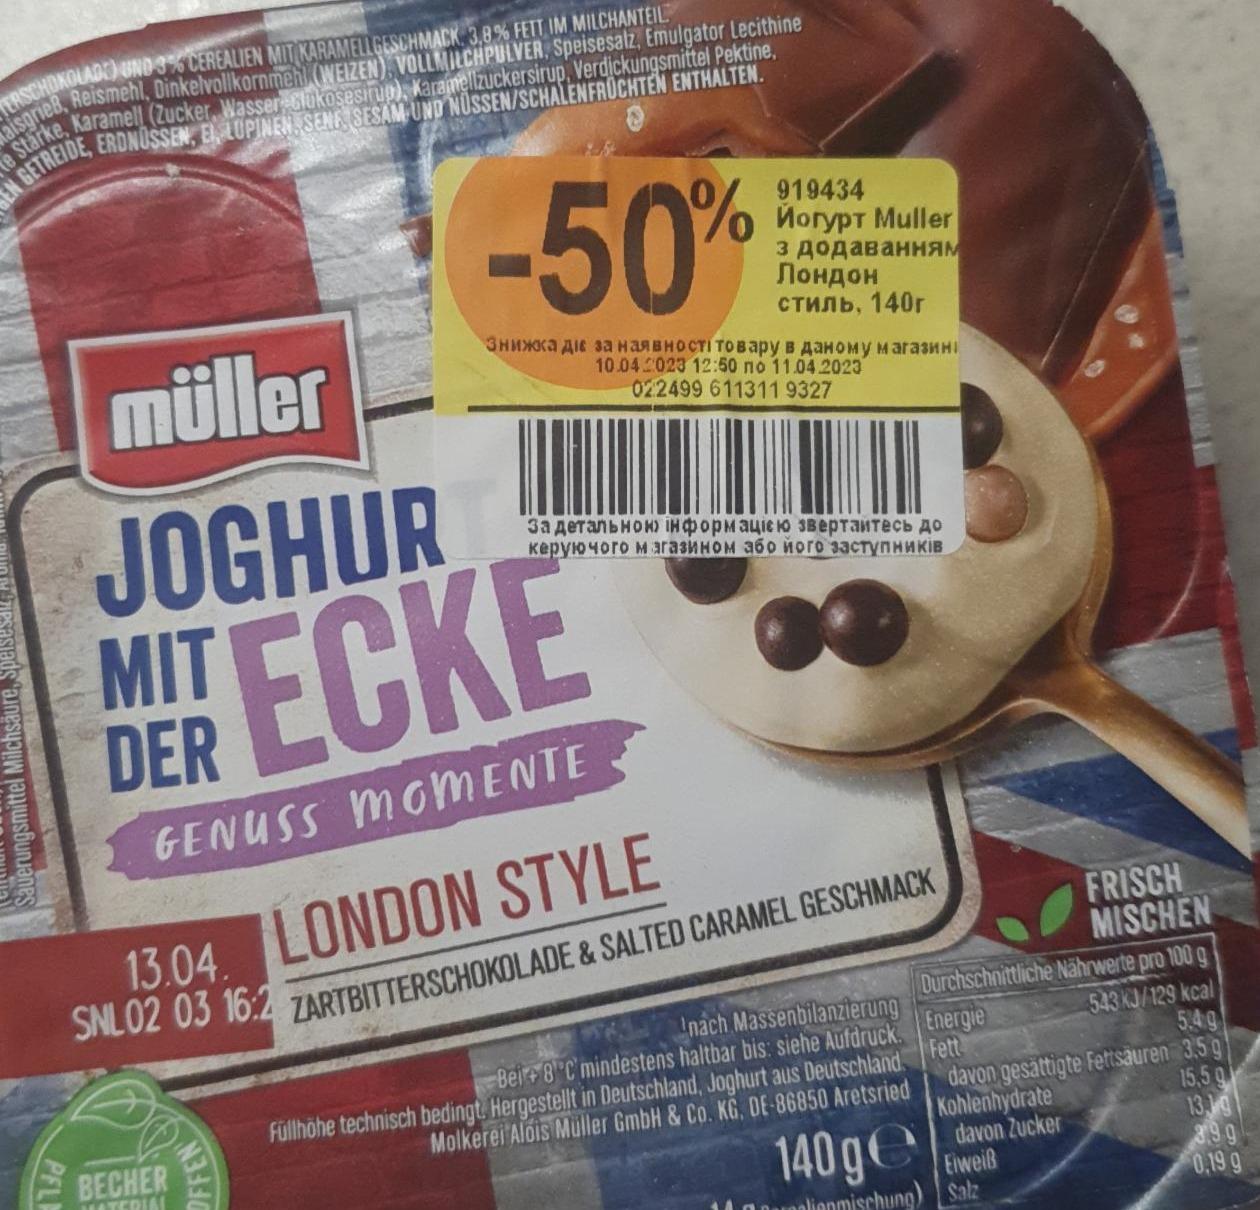 Фото - Йогурт з добавкою Лондон Стиль Joghurt mit der ecke London style Müller